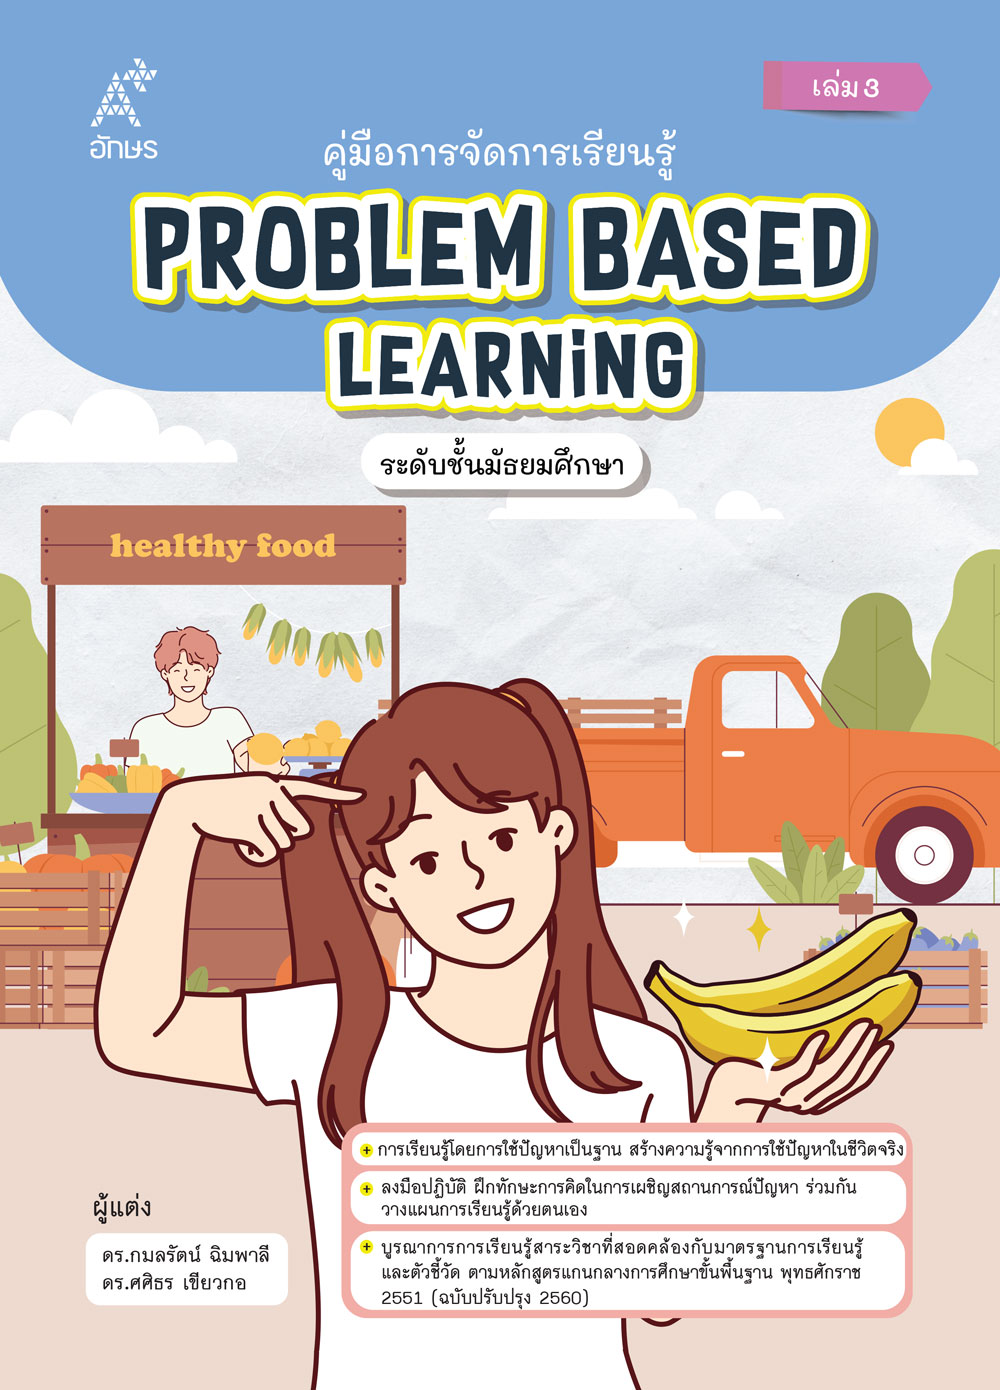 คู่มือการจัดการเรียนรู้ Problem Based Learning ระดับชั้นมัธยมศึกษา เล่ม 3 (Coming soon)